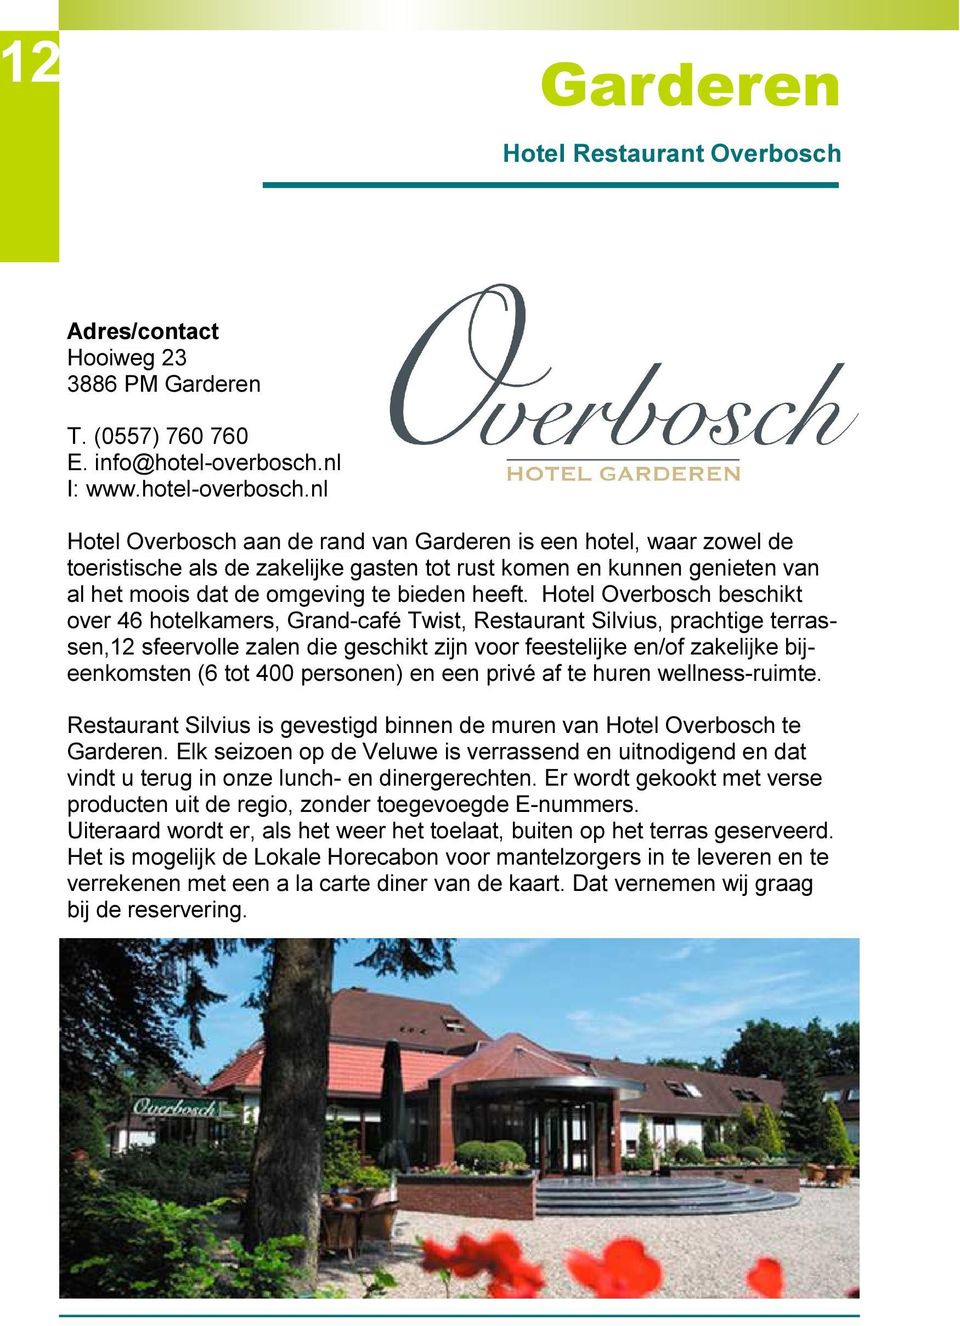 nl Hotel Overbosch aan de rand van Garderen is een hotel, waar zowel de toeristische als de zakelijke gasten tot rust komen en kunnen genieten van al het moois dat de omgeving te bieden heeft.